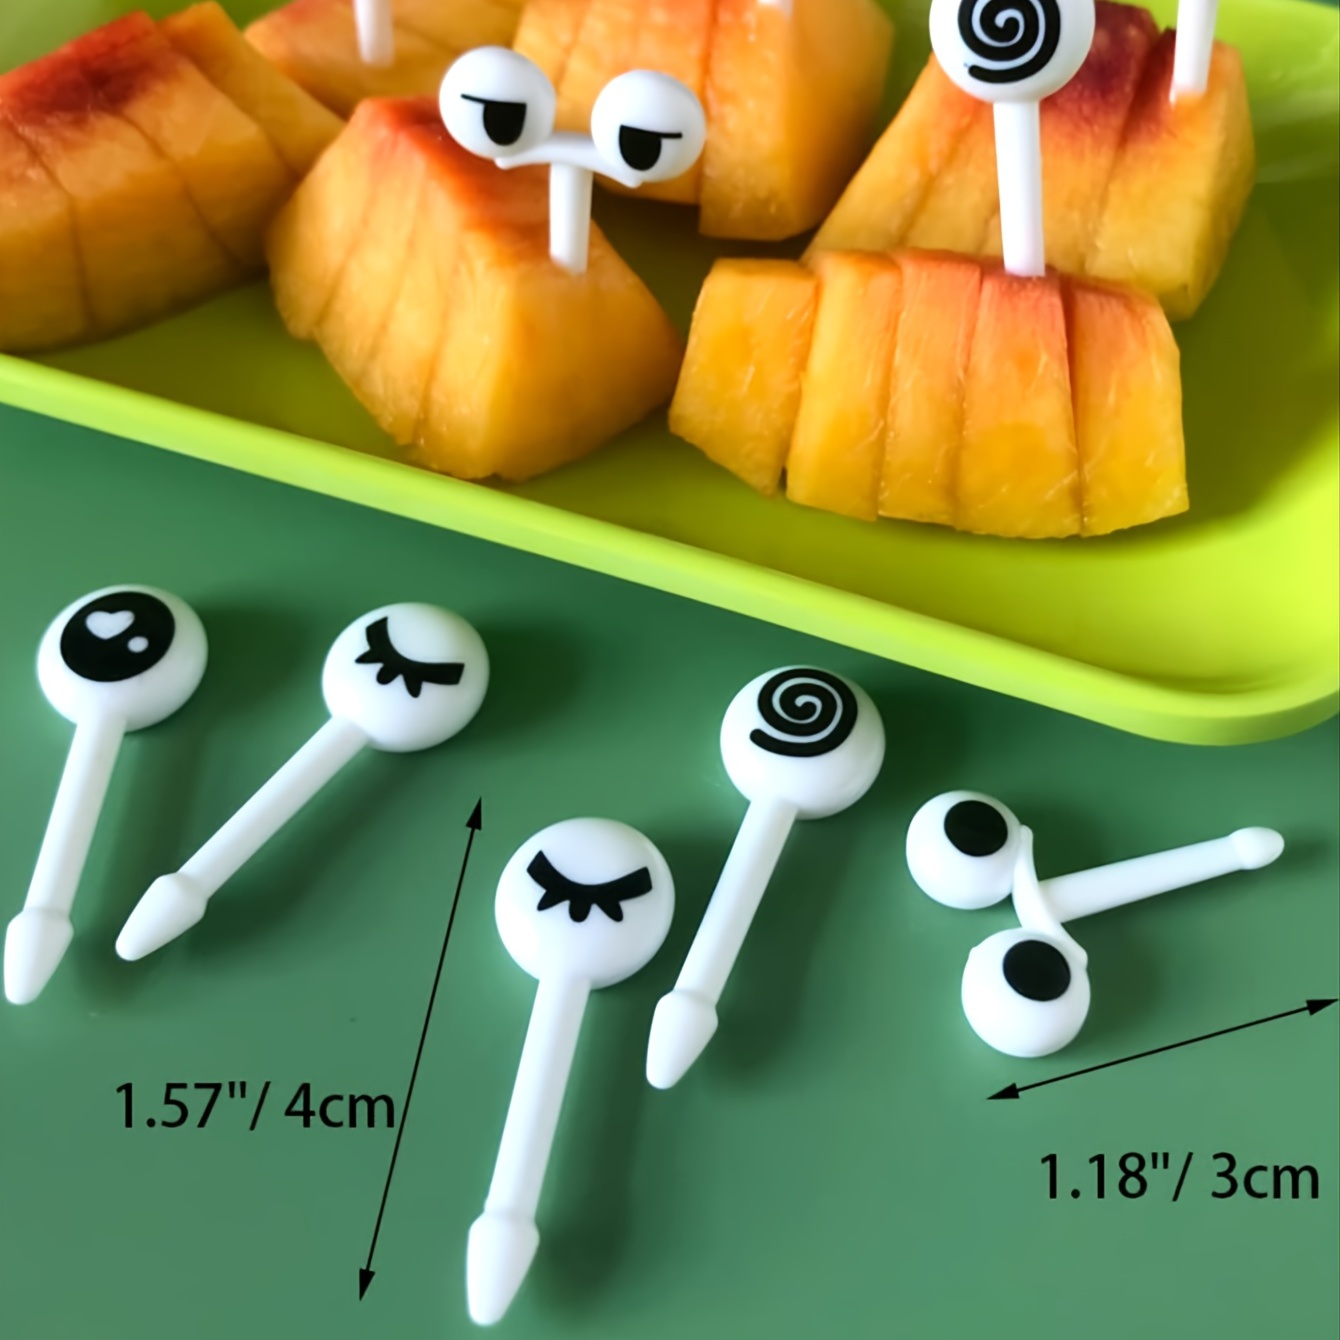 10 Pcs Mini Eye Fruit Fork Reusable Plastic Fork Snack Cake